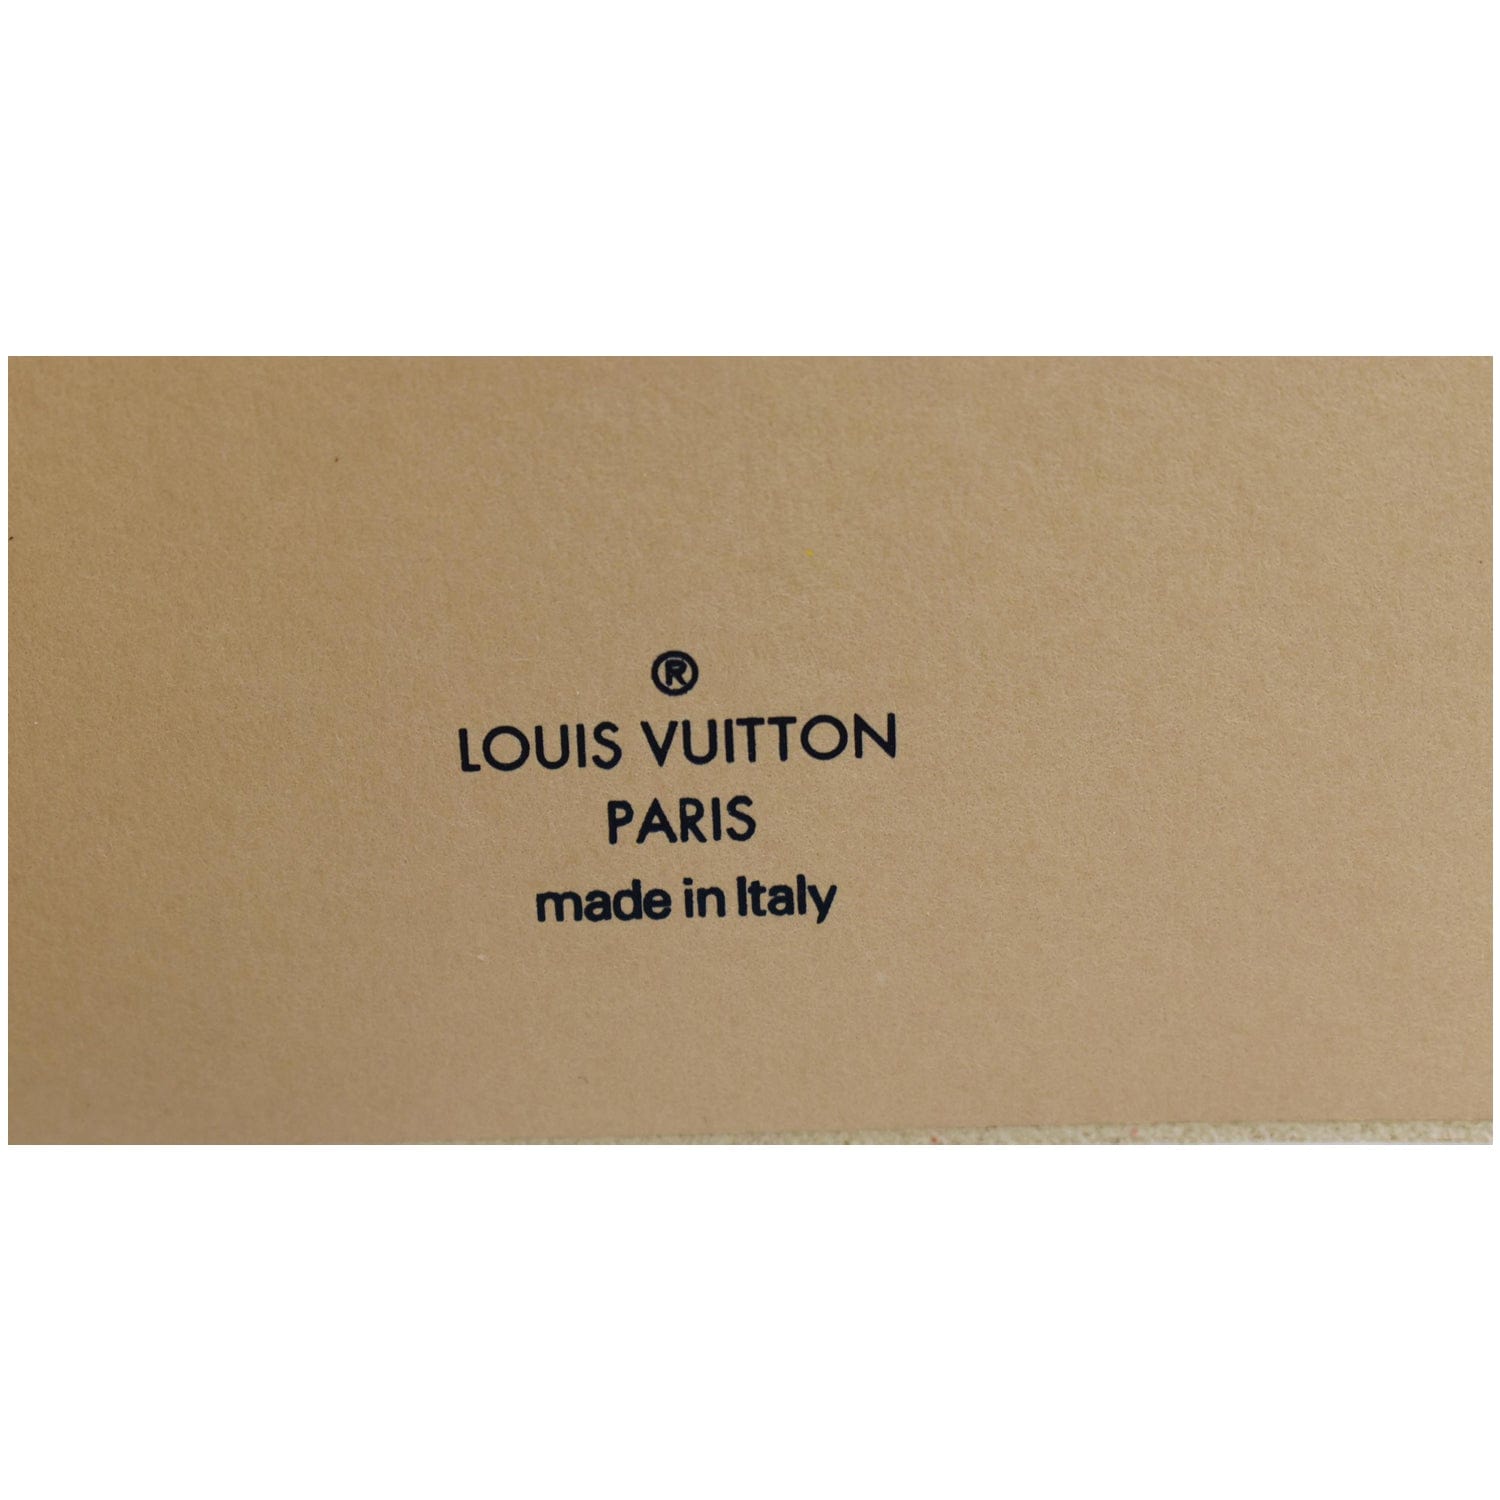 Louis Vuitton “Fleur du Désert” – Mùi hương lấy cảm hứng Trung Đông 